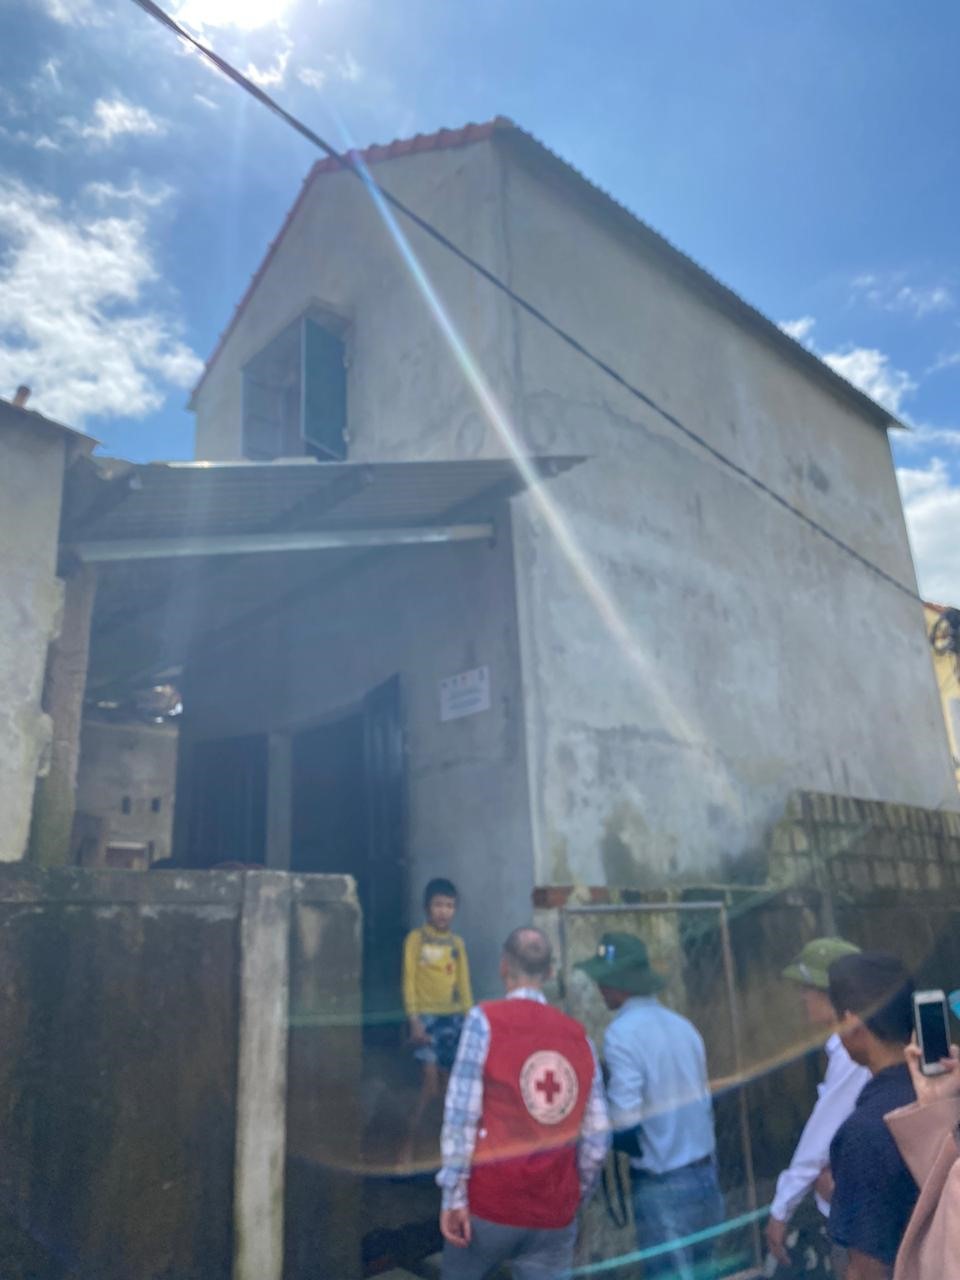 Đoàn tới thăm nhà chống lũ được xây dựng tại tỉnh Quảng Bình. Ảnh: ĐSQ Anh